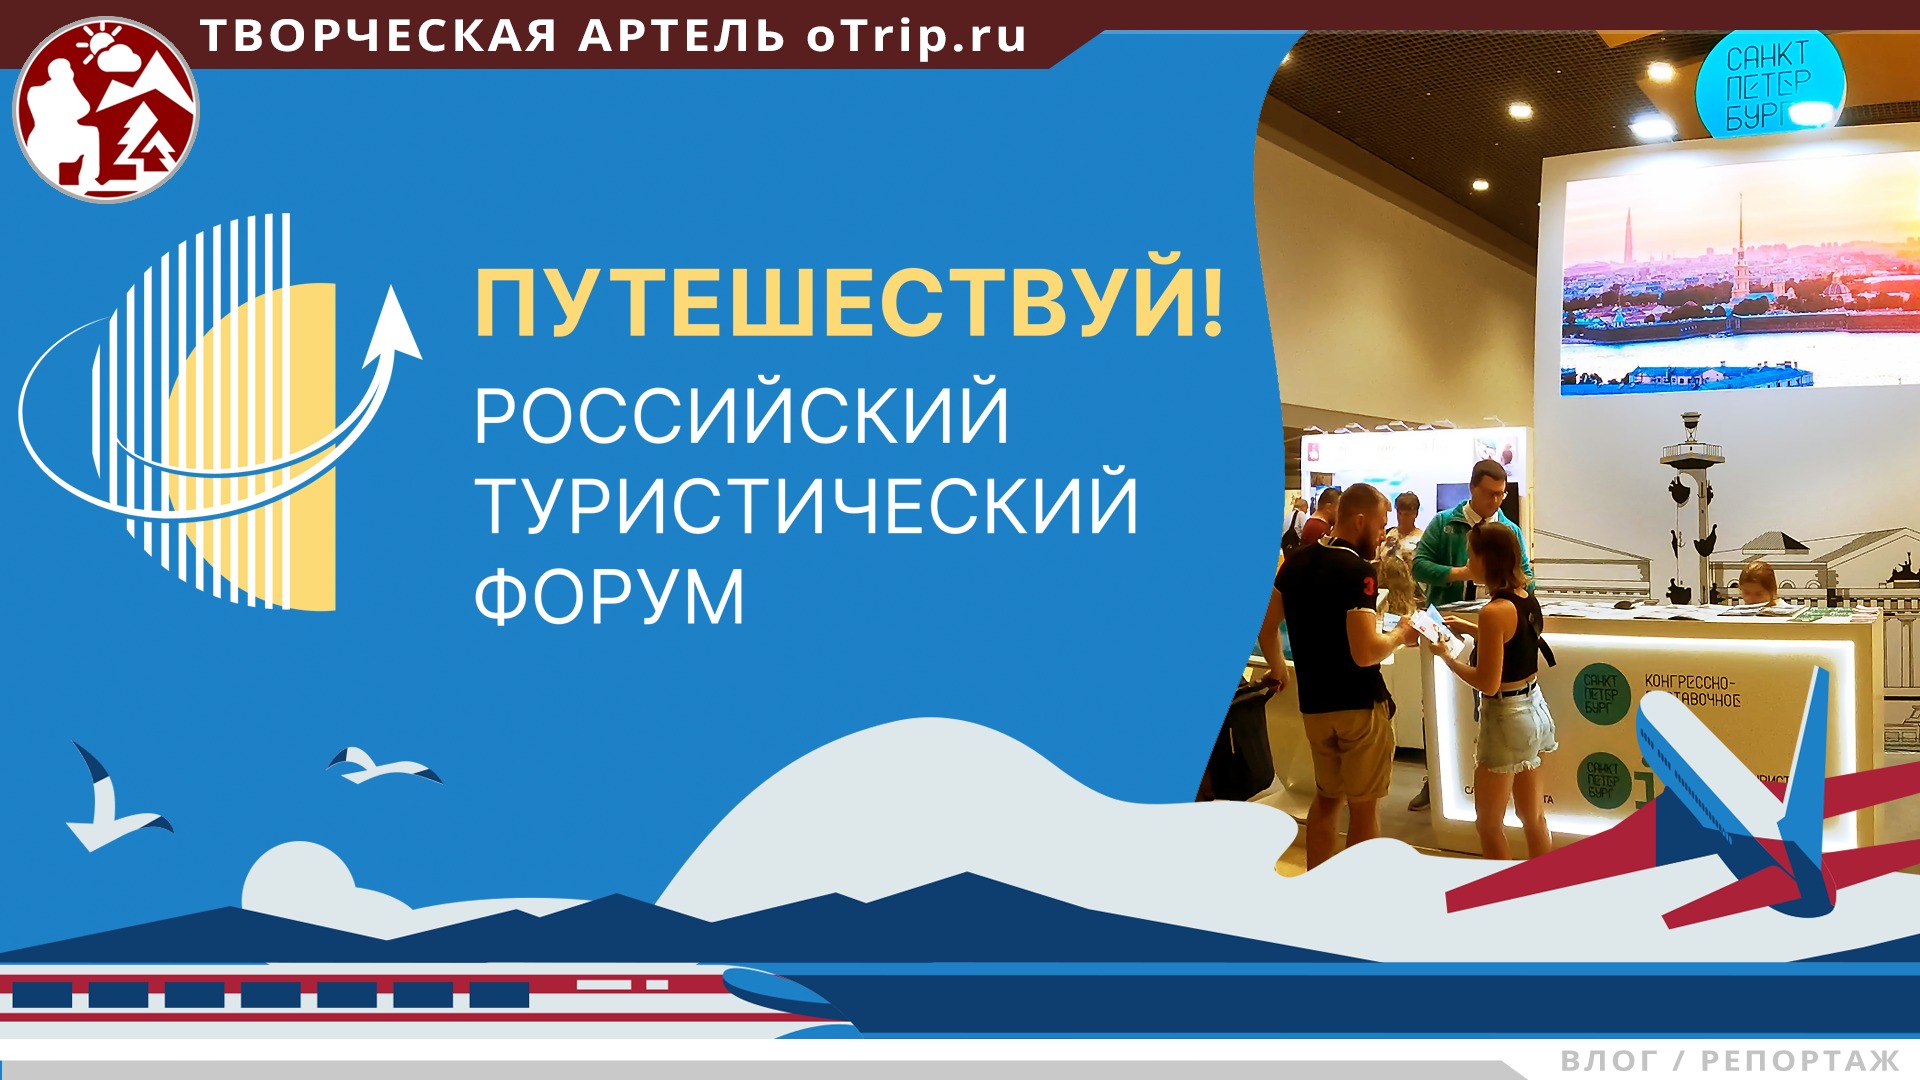 Туристический форум «Путешествуй!» 2022 на ВДНХ